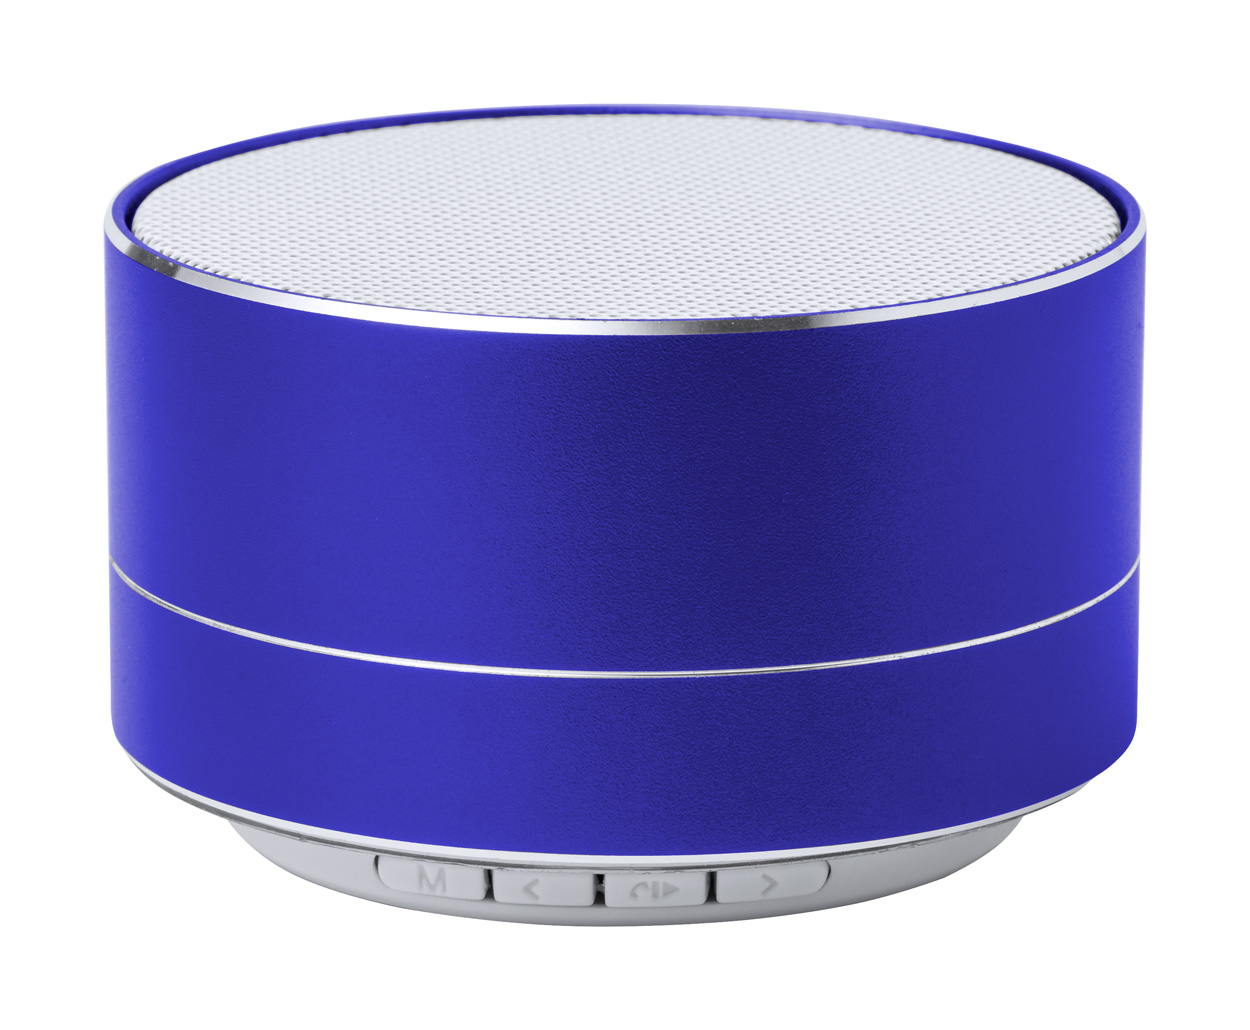 Skind bluetooth speaker - blue